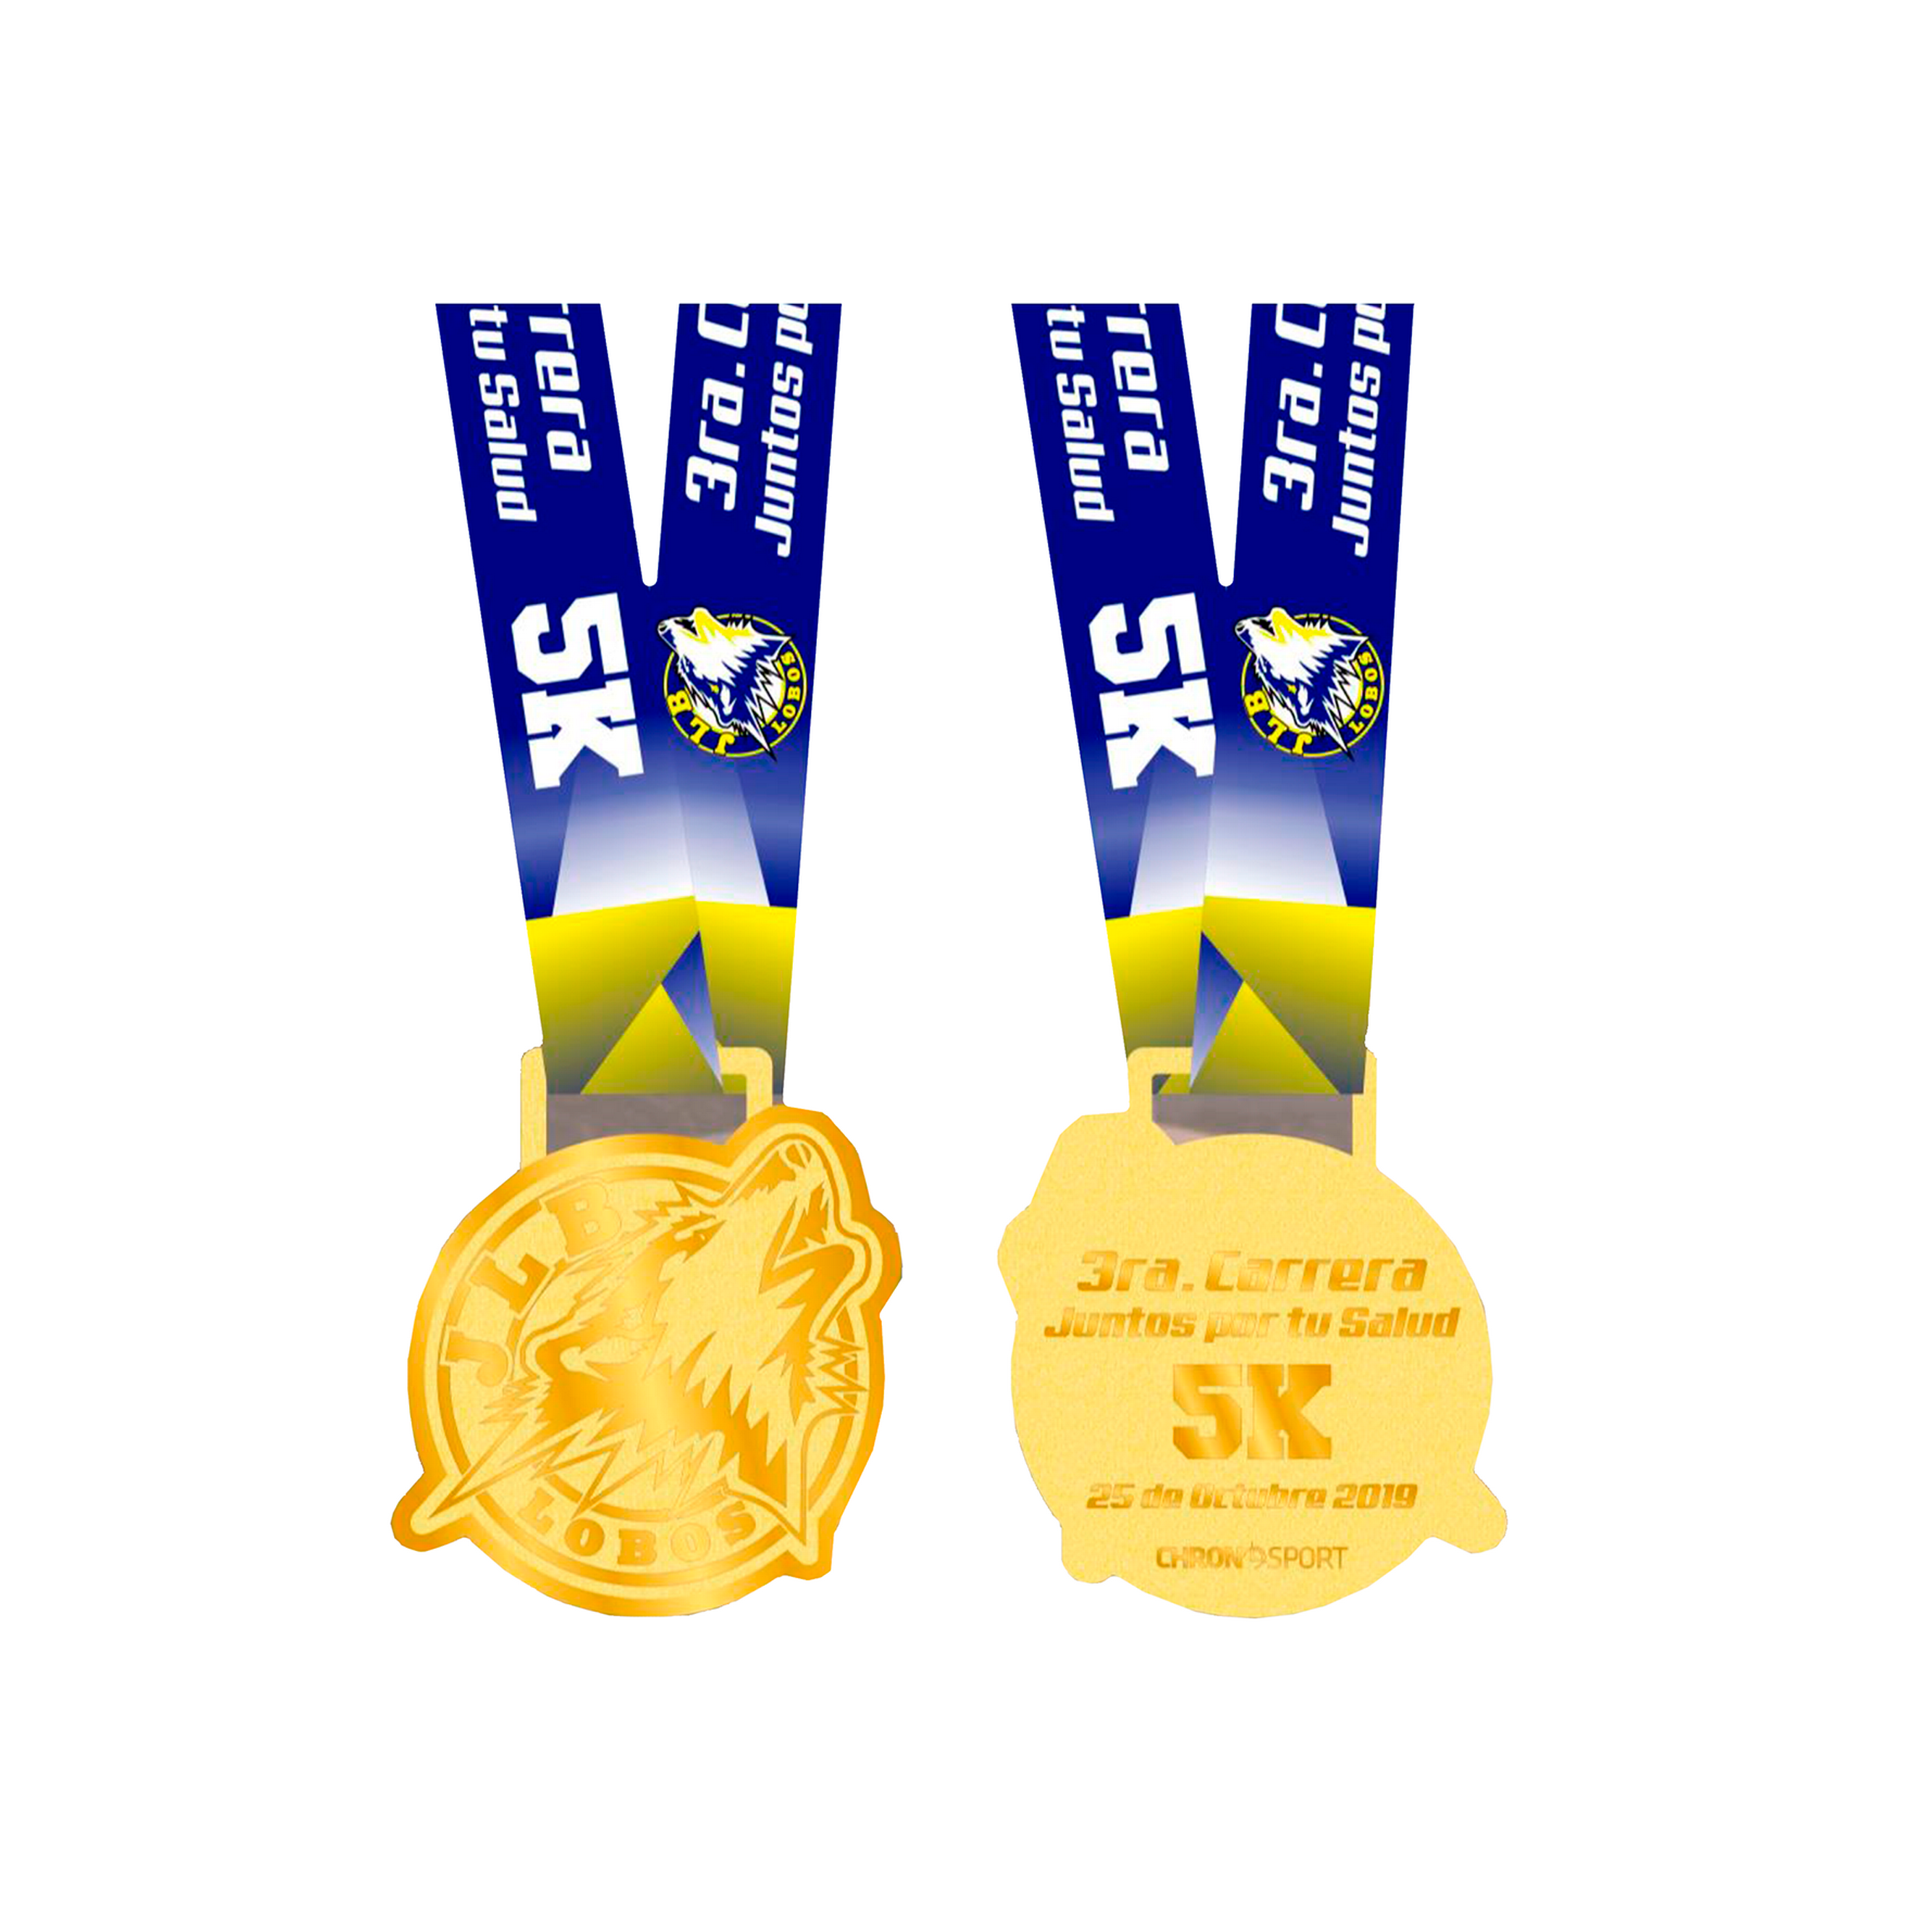 Percha de medalla de carrera / Medallista de carrera / Exhibición de  medallas / Miles of Memories / Medallero / Medallero de ciclismo / Medallero  de triatlón -  México